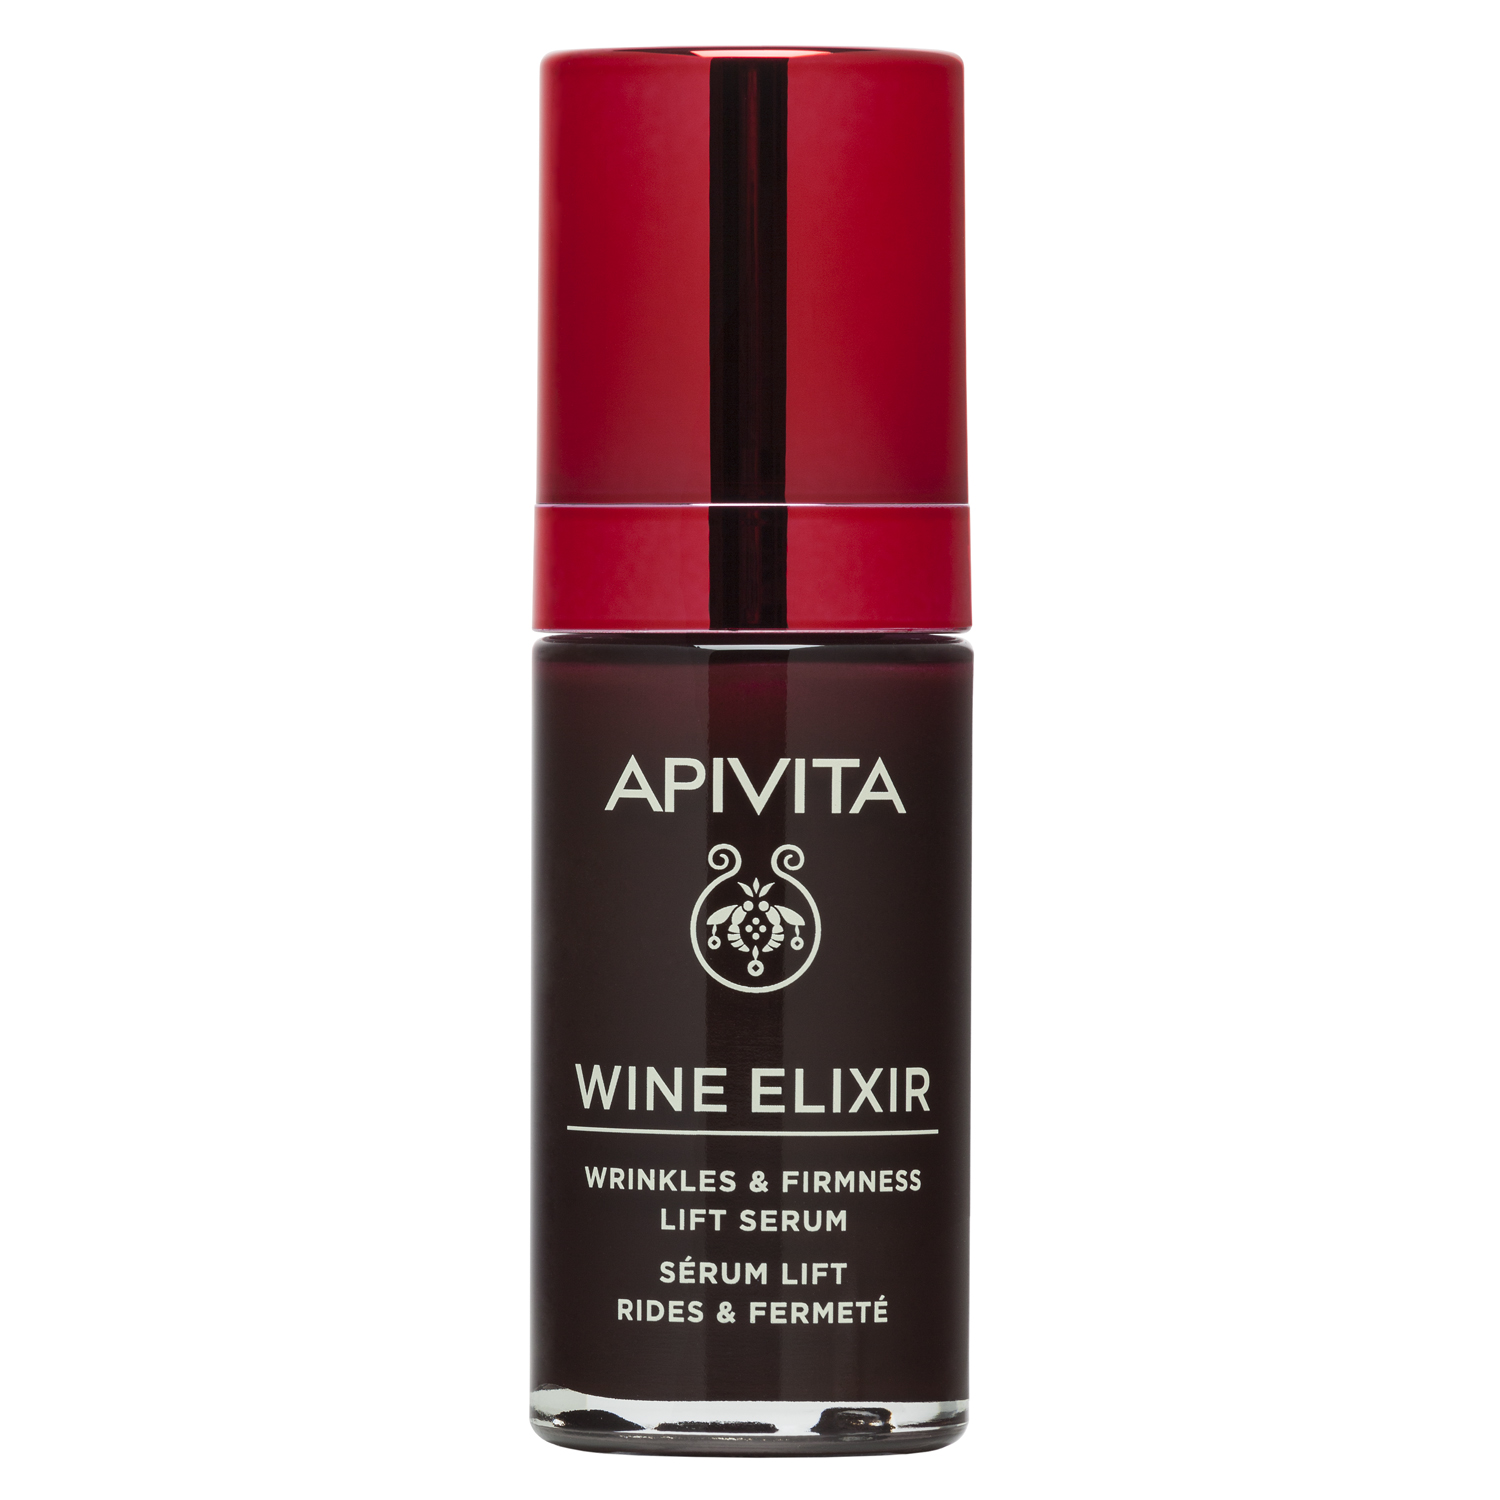 Apivita Сыворотка для лифтинга, 30 мл (Apivita, Wine Elixir) apivita wine elixir крем лифтинг для борьбы с морщинами spf 30 тюбик 40 мл